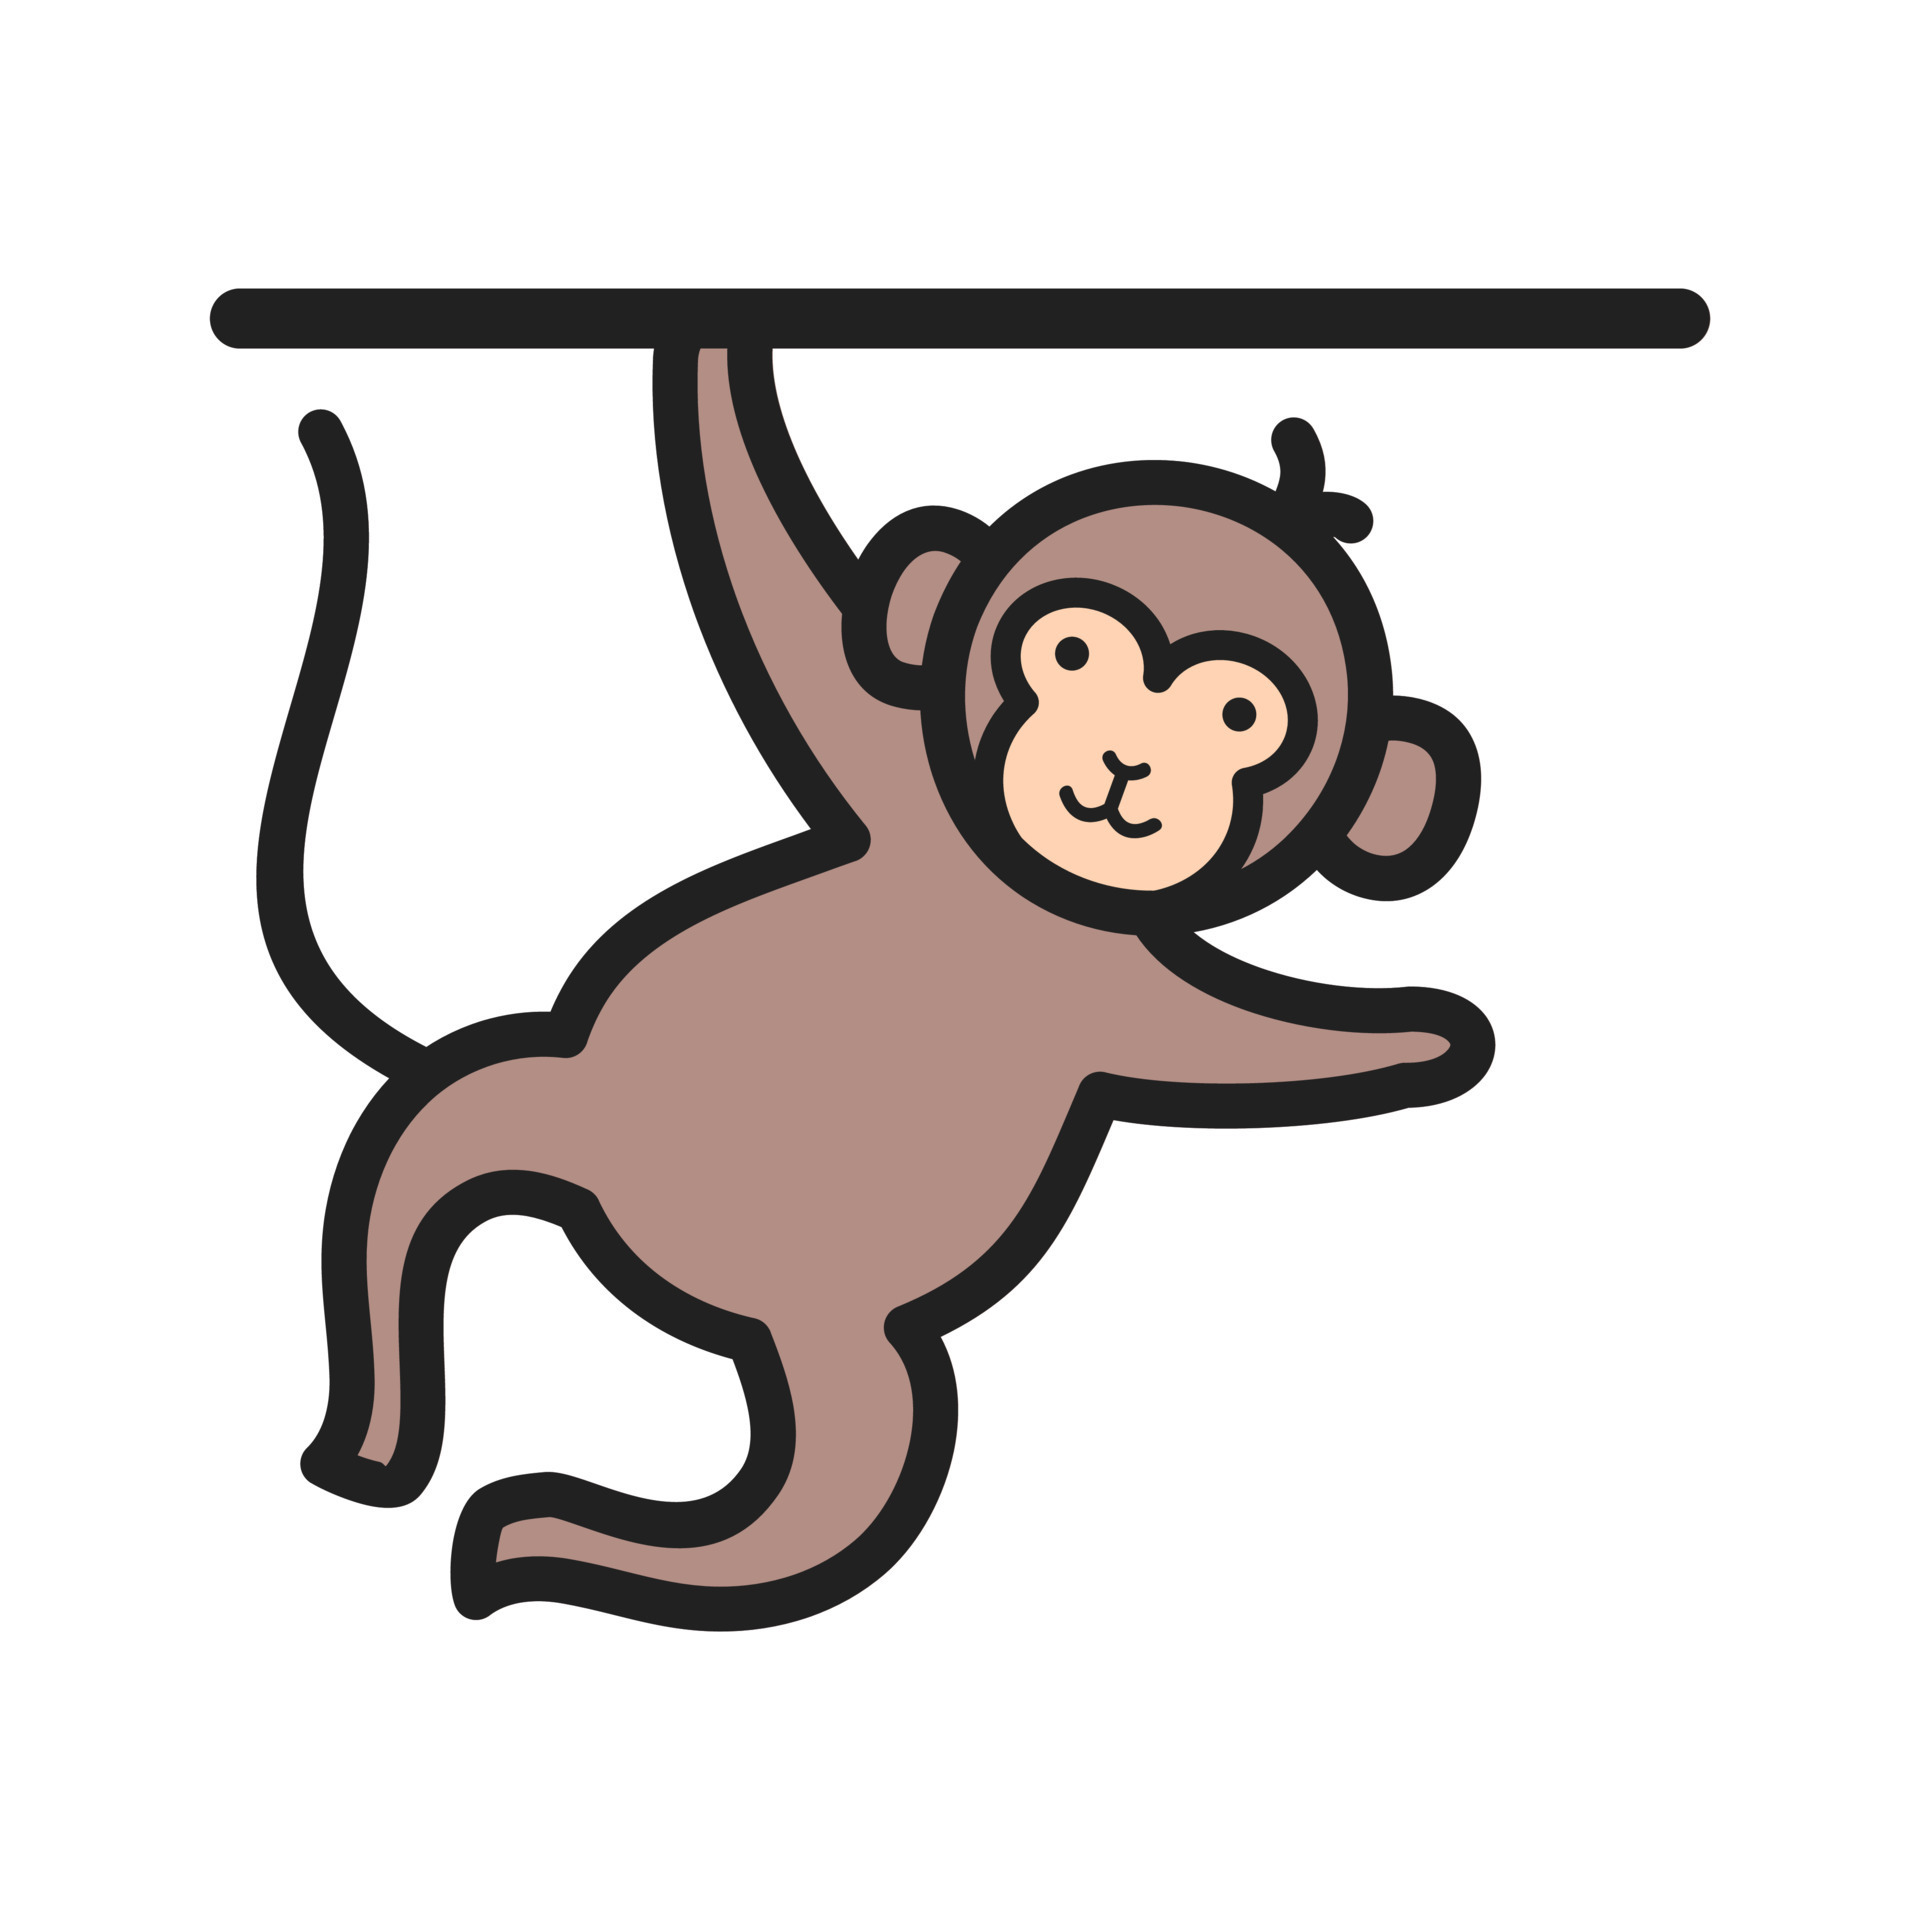 Macaco - ícones de entretenimento grátis